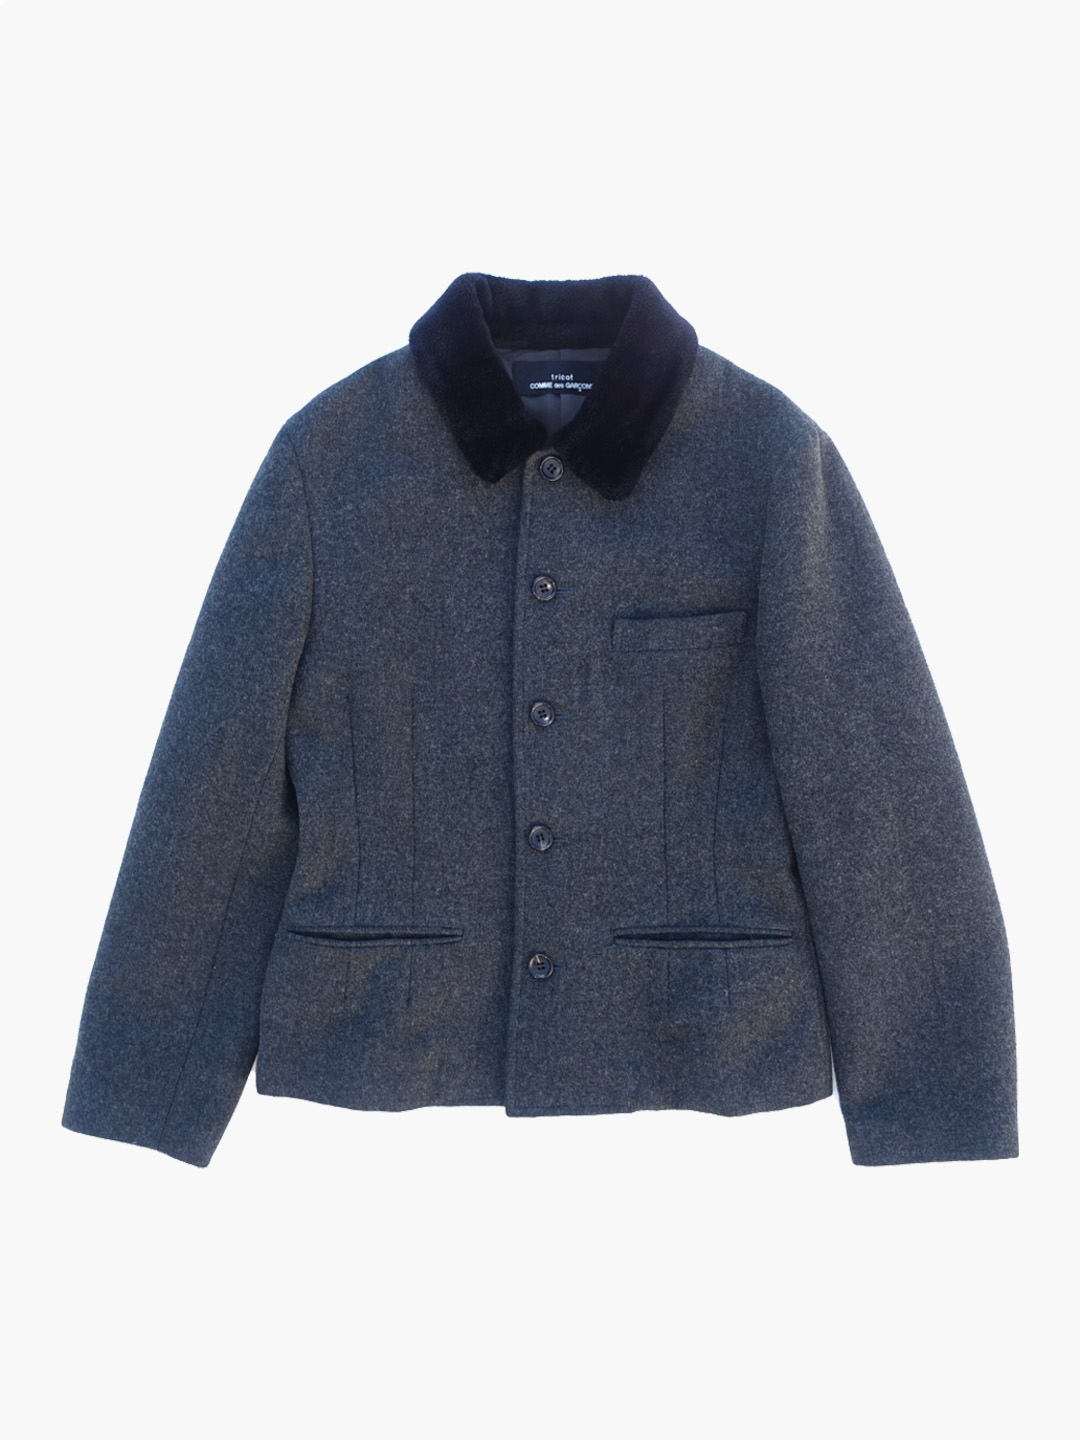 TRICOT COMME DES GARCONSFur collar wool blazer